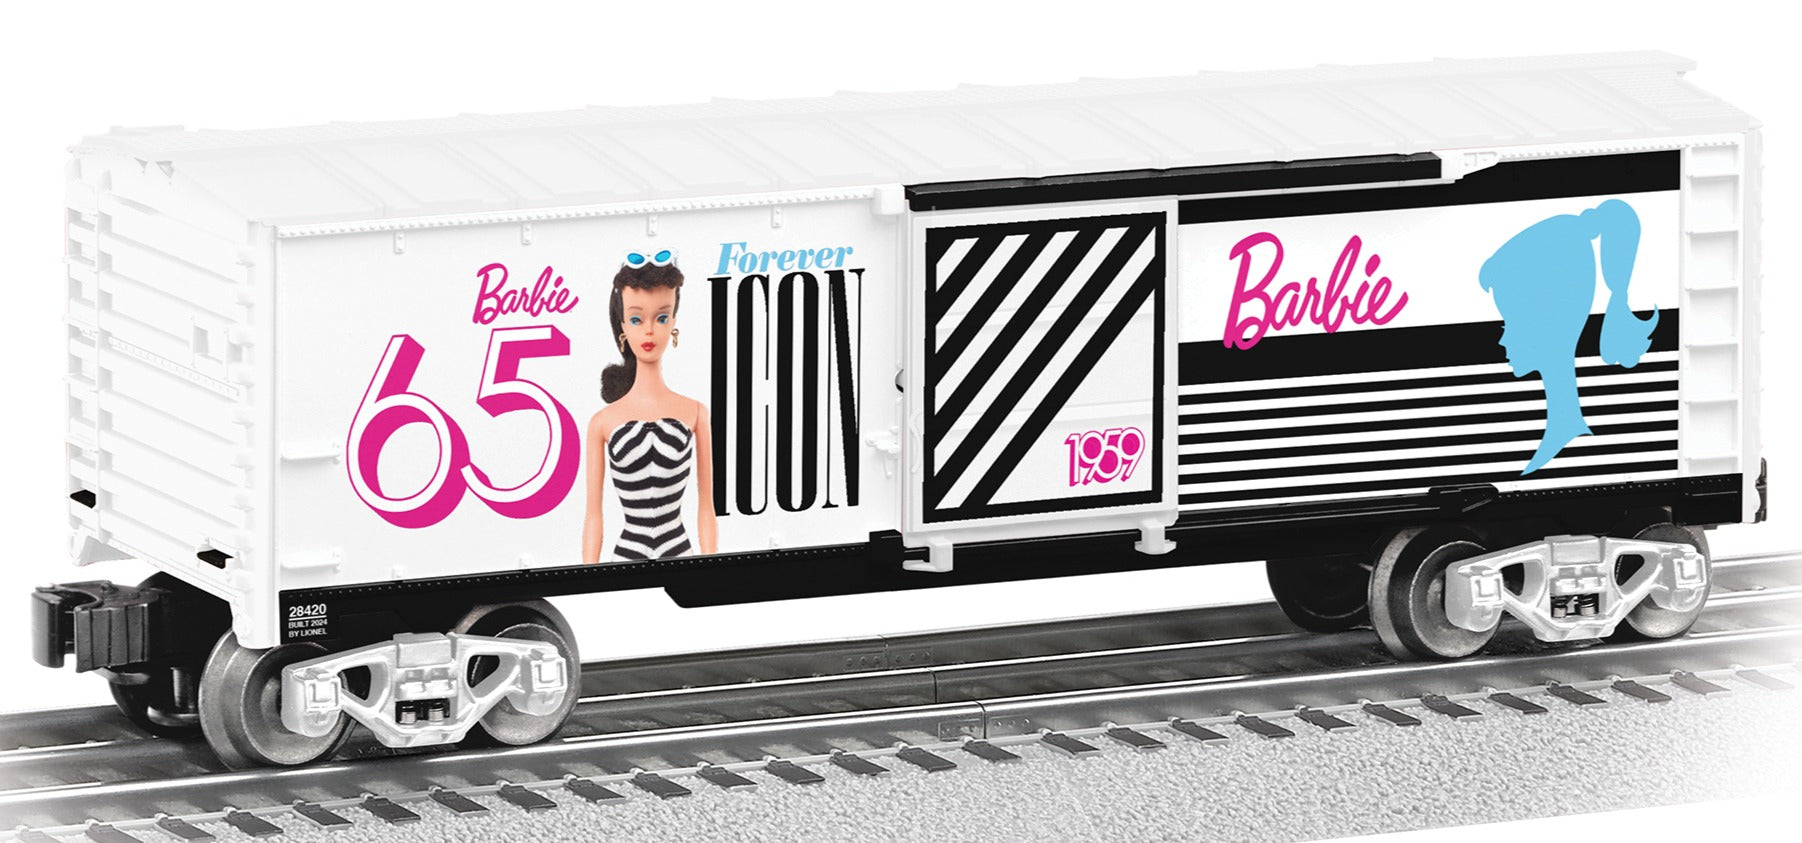 Lionel 2428420 - Barbie - 65th Anniversary 1959 Boxcar "The Original"